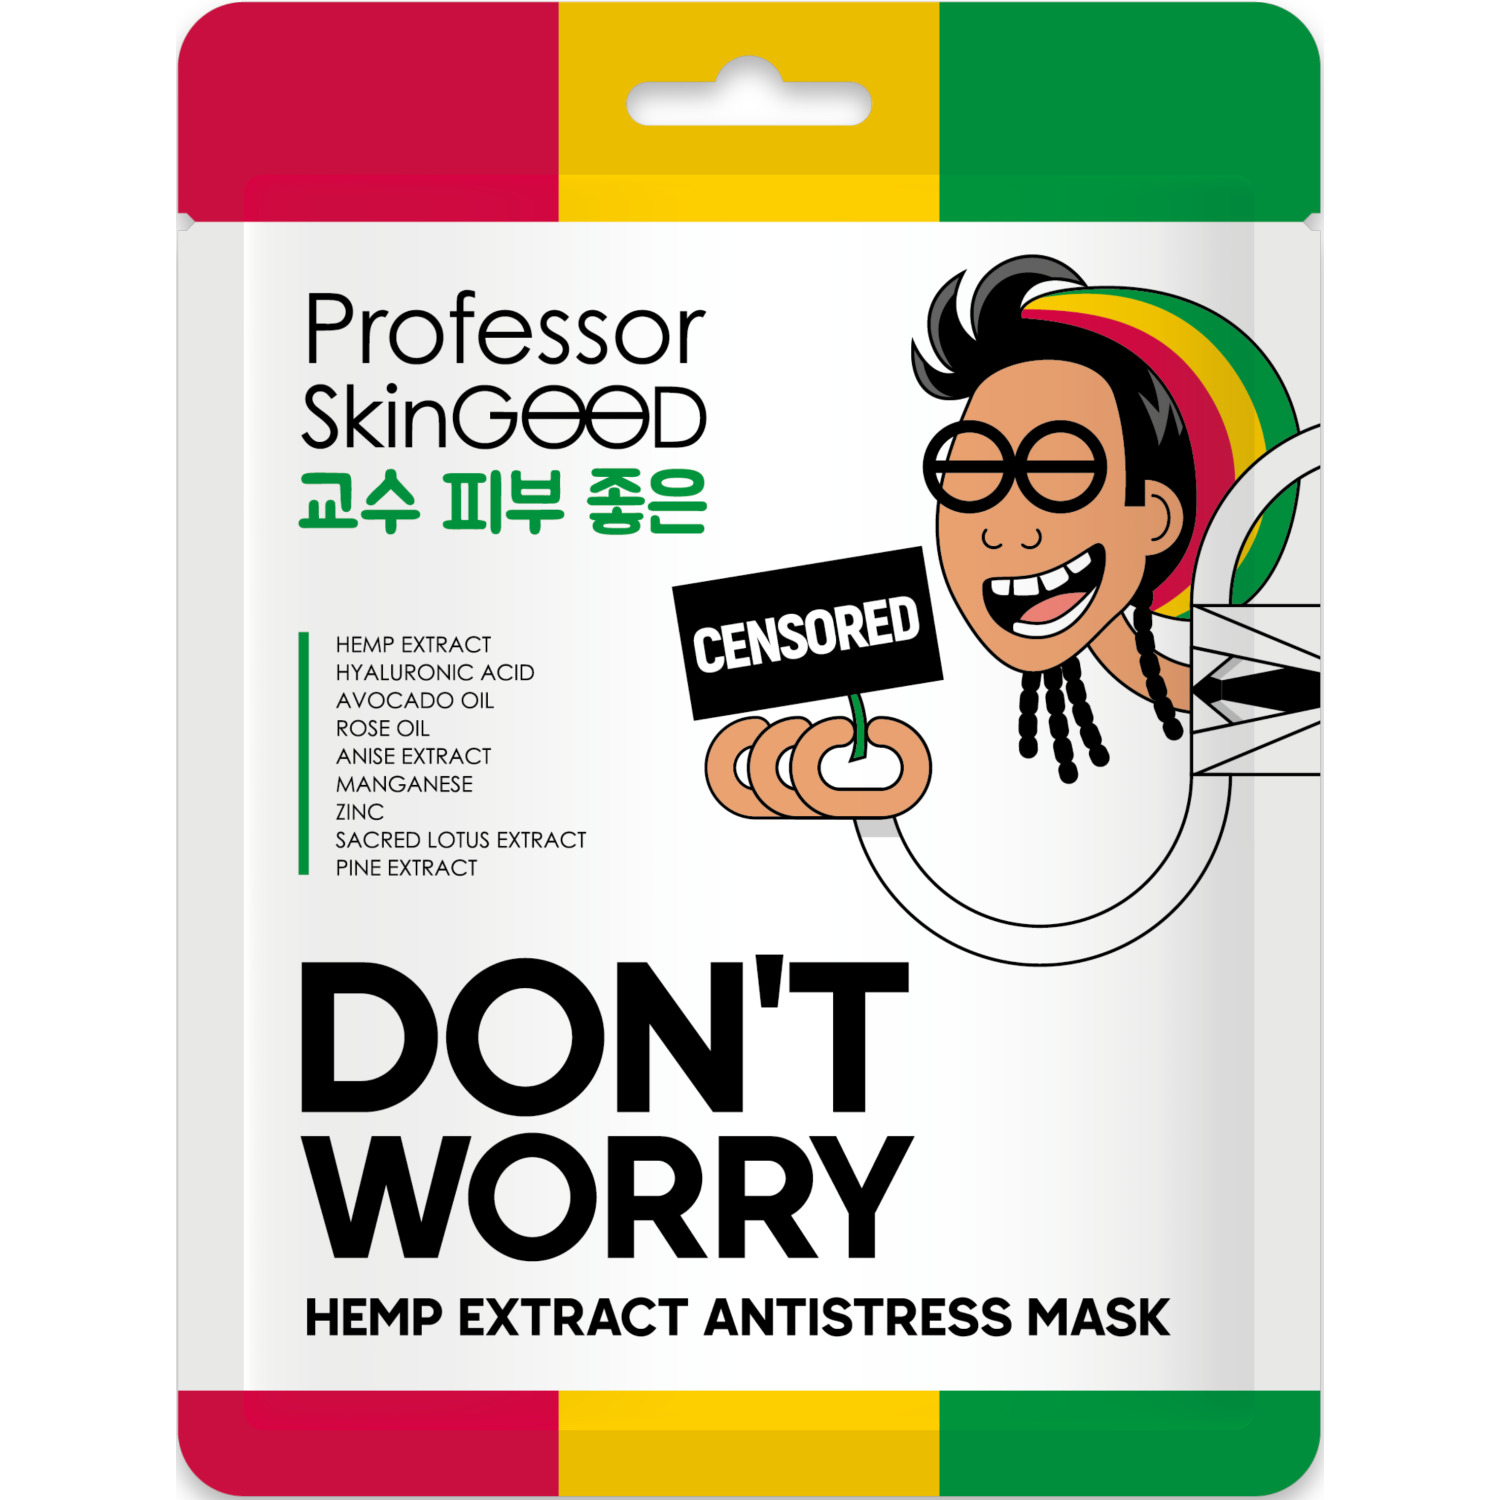 Маска для лица Professor SkinGOOD Hemp Extract Antistress Mask с экстрактом конопли, 25 мл skinlite фольгированная маска розовое золото 27